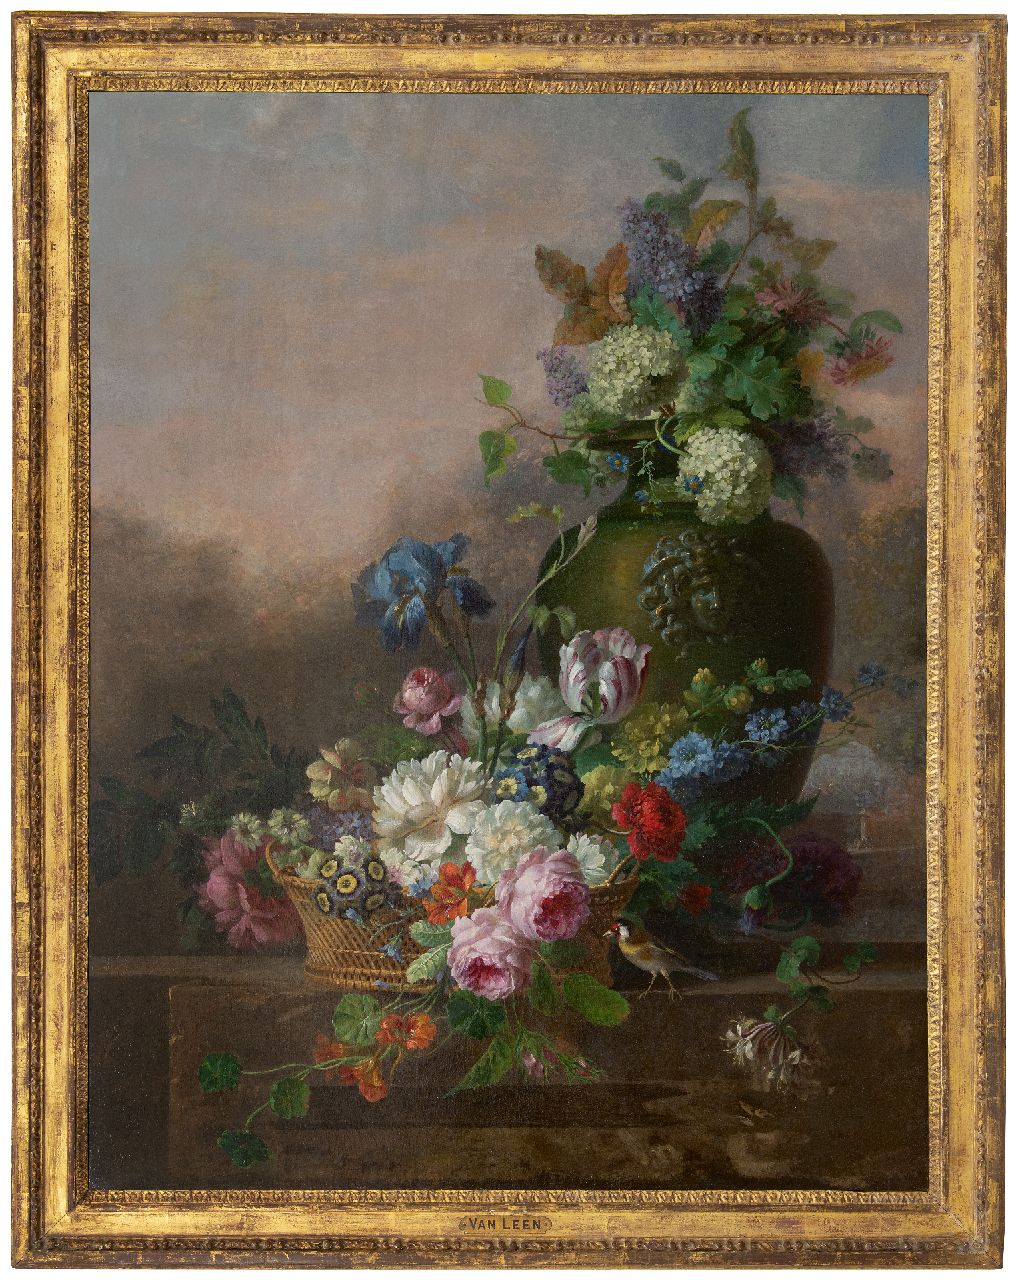 Leen W. van | Willem van Leen, Bloemstilleven met rozen, tulp, iris en andere bloemen, olieverf op doek 116,2 x 90,8 cm, gesigneerd met resten van signatuur